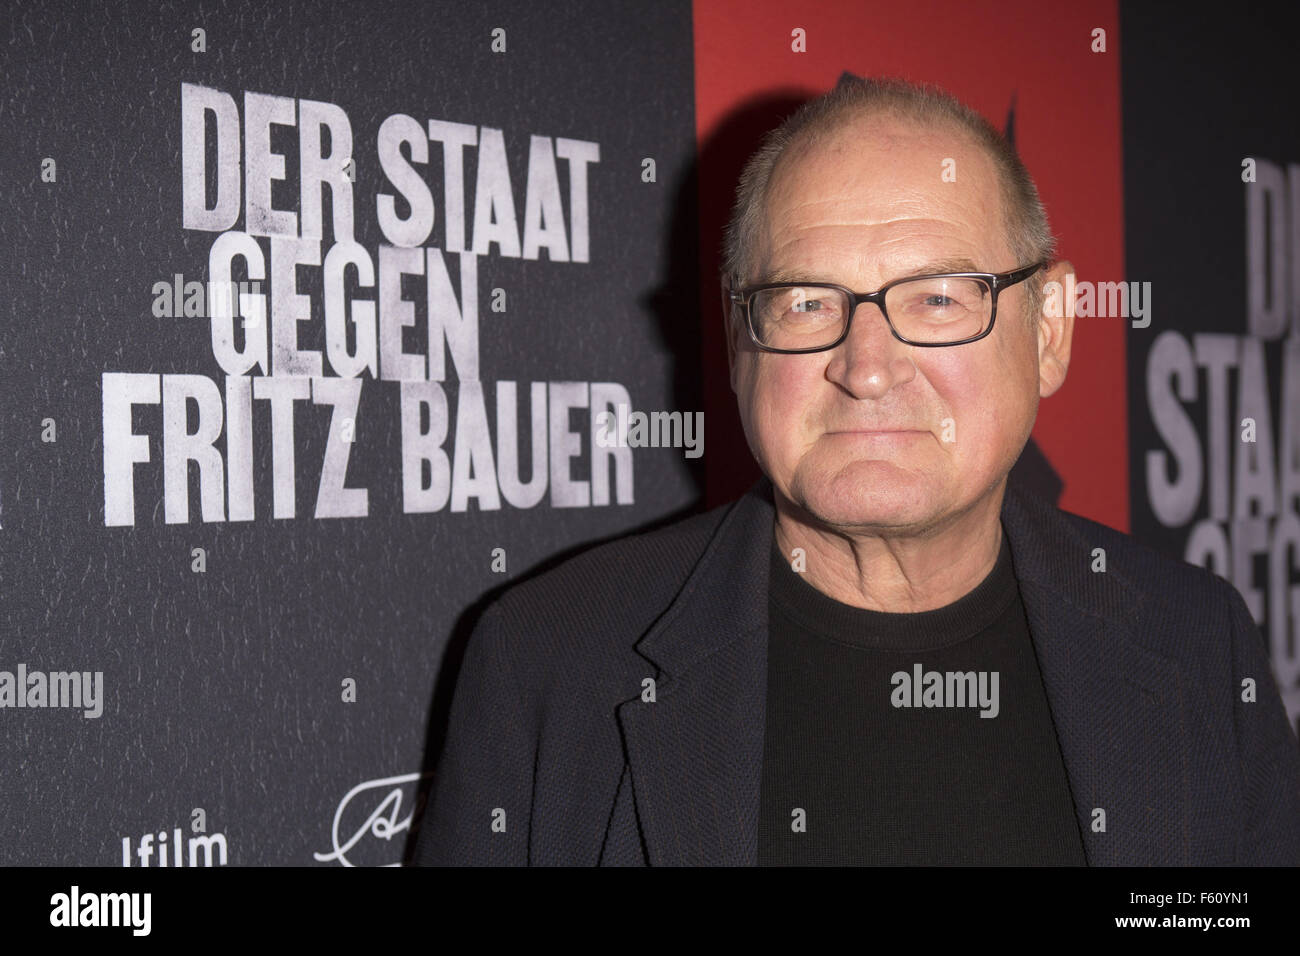 Celebrità partecipando alla premiere di der Staat gegen Fritz Bauer a Cinema Abaton dotate: Burghart Klaussner dove: Amburgo, Germania Quando: 27 Set 2015 Foto Stock